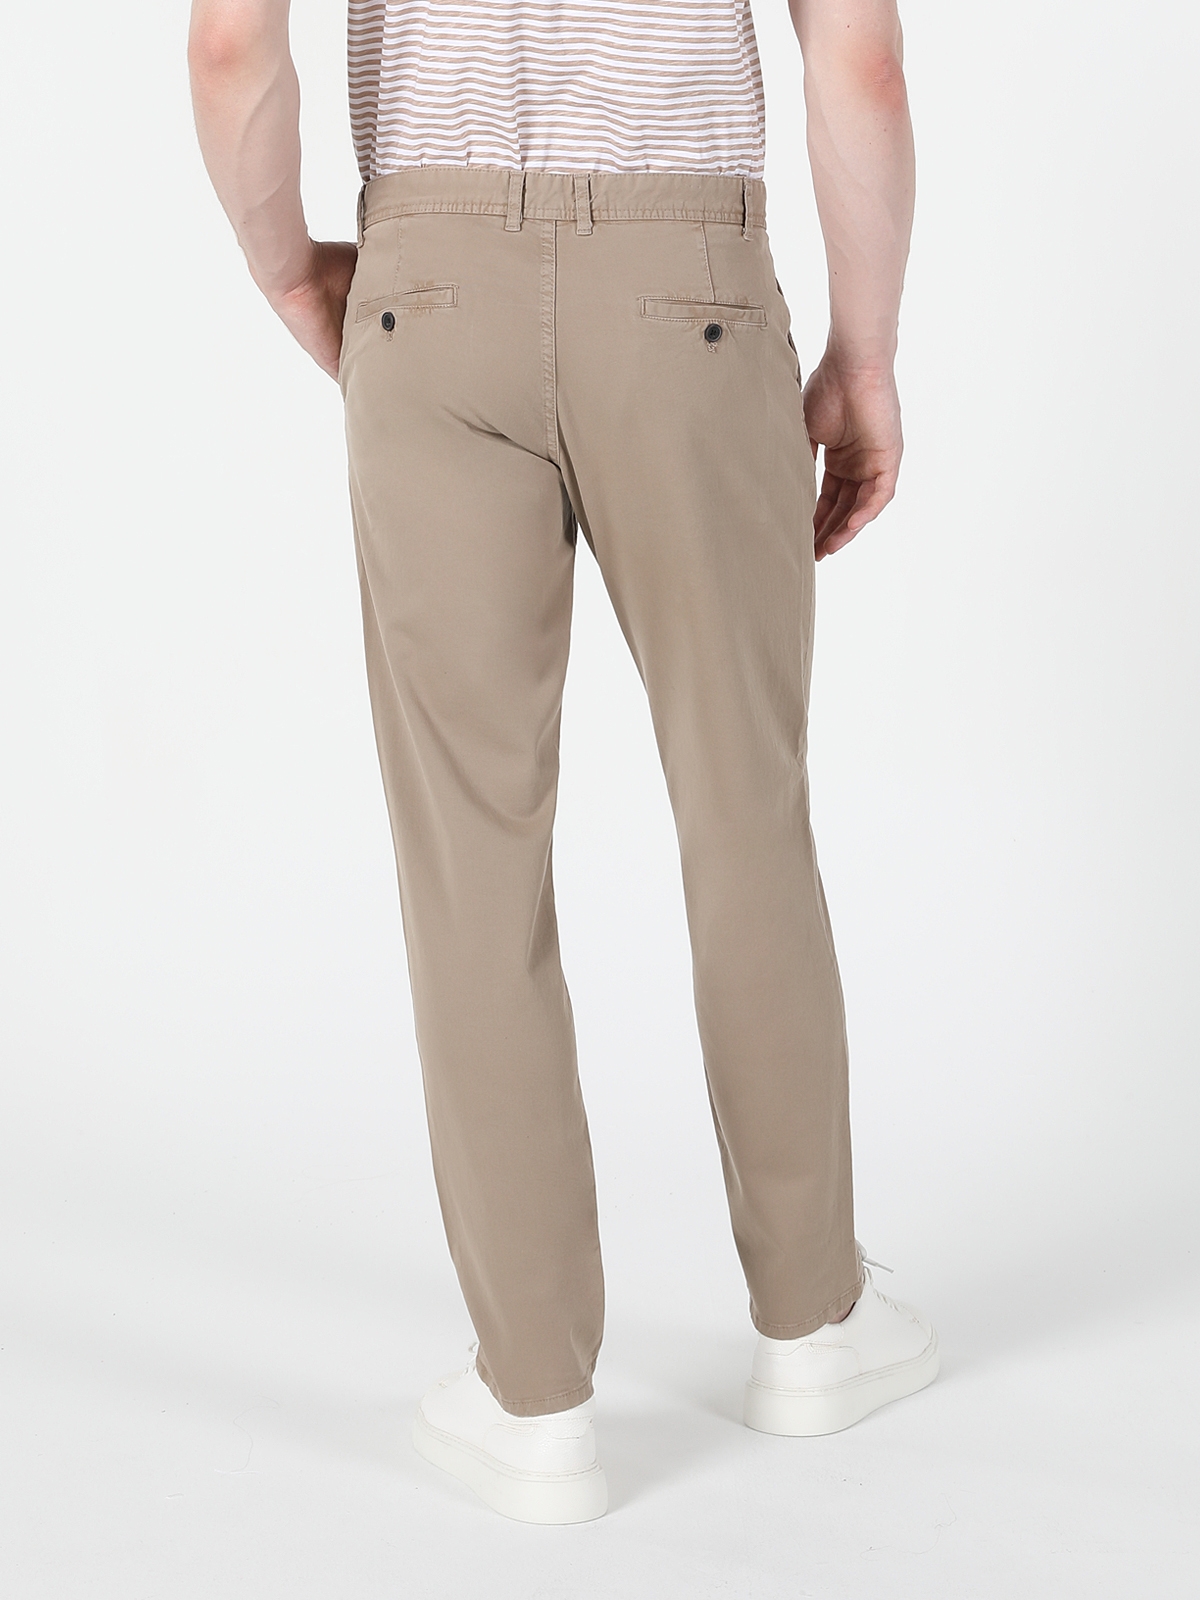 Afficher les détails de Pantalon Jaune Pour Homme, Coupe Régulière, Taille Moyenne, Jambe Droite